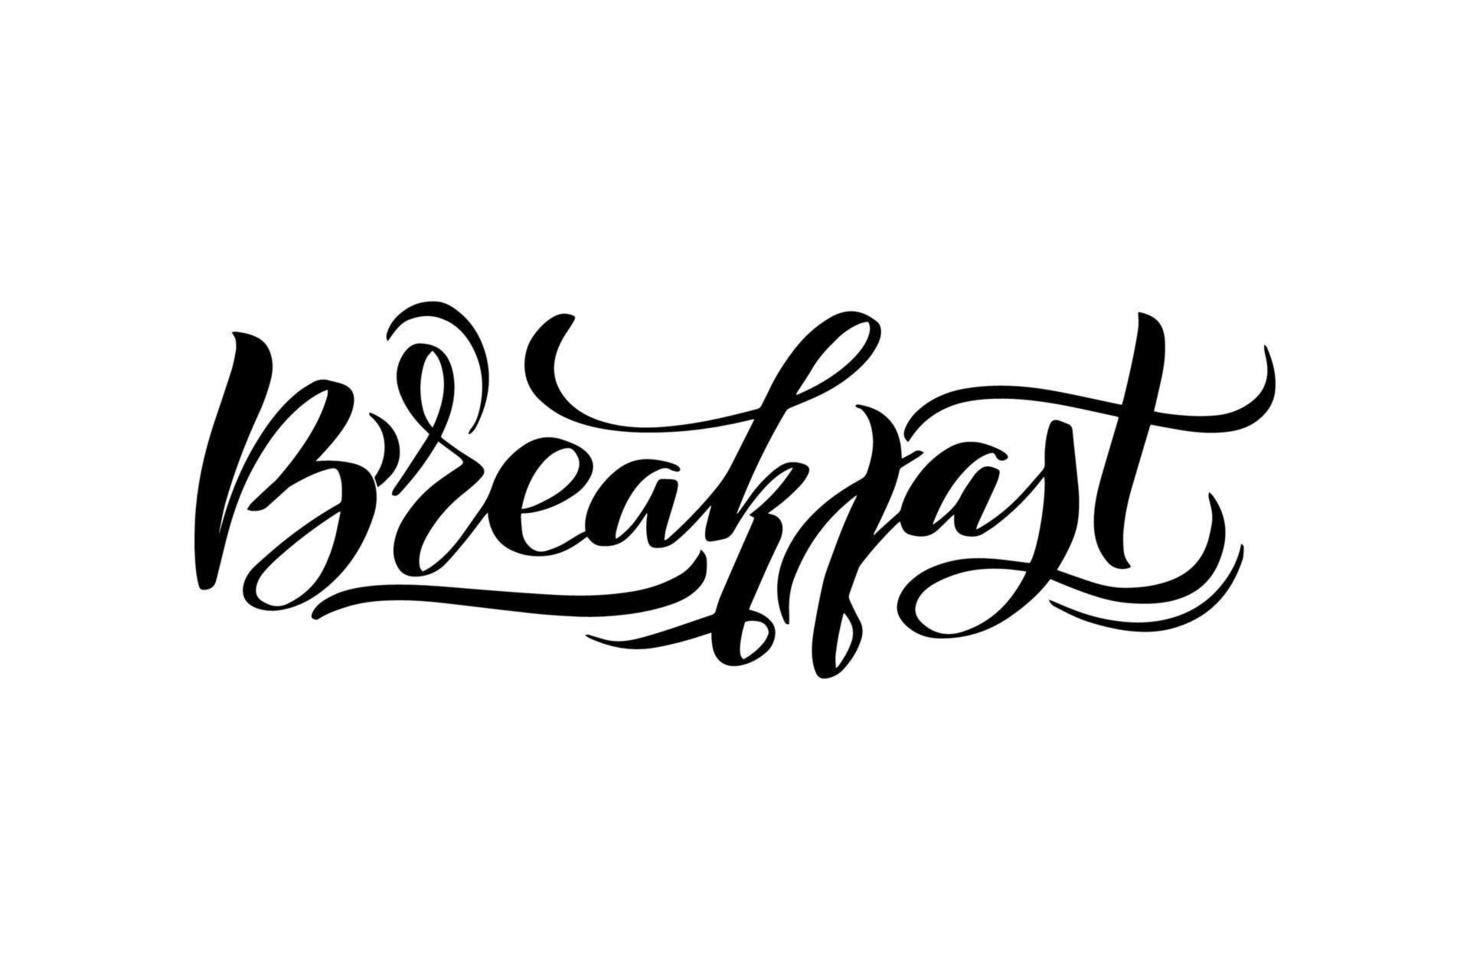 desayuno inspirador con letras de pincel manuscritas. ilustración de caligrafía vectorial aislada sobre fondo blanco. tipografía para pancartas, insignias, postales, camisetas, impresiones, carteles. vector